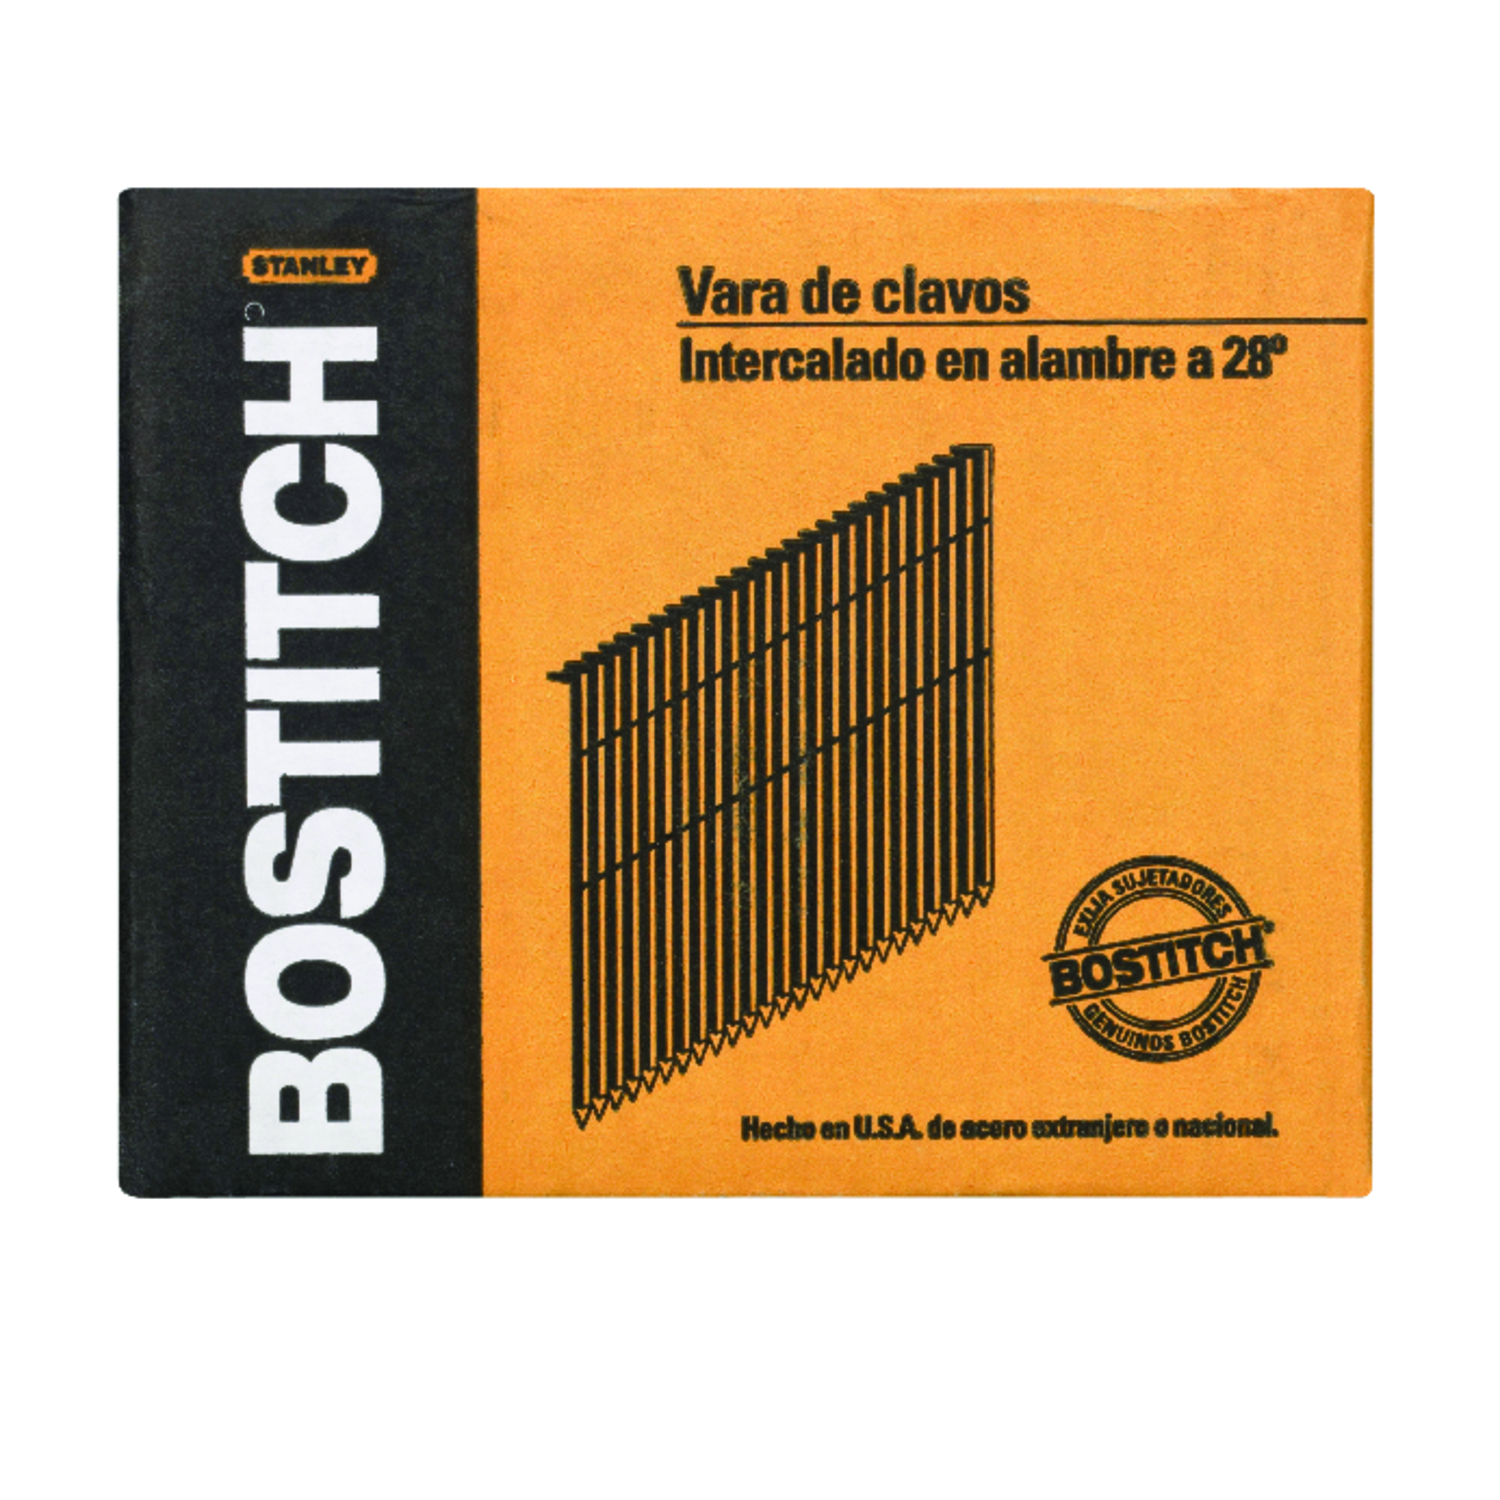 Bostitch 3-1/4 in. Angled Strip Galvanized Framing Nails 28 deg 2000 pk